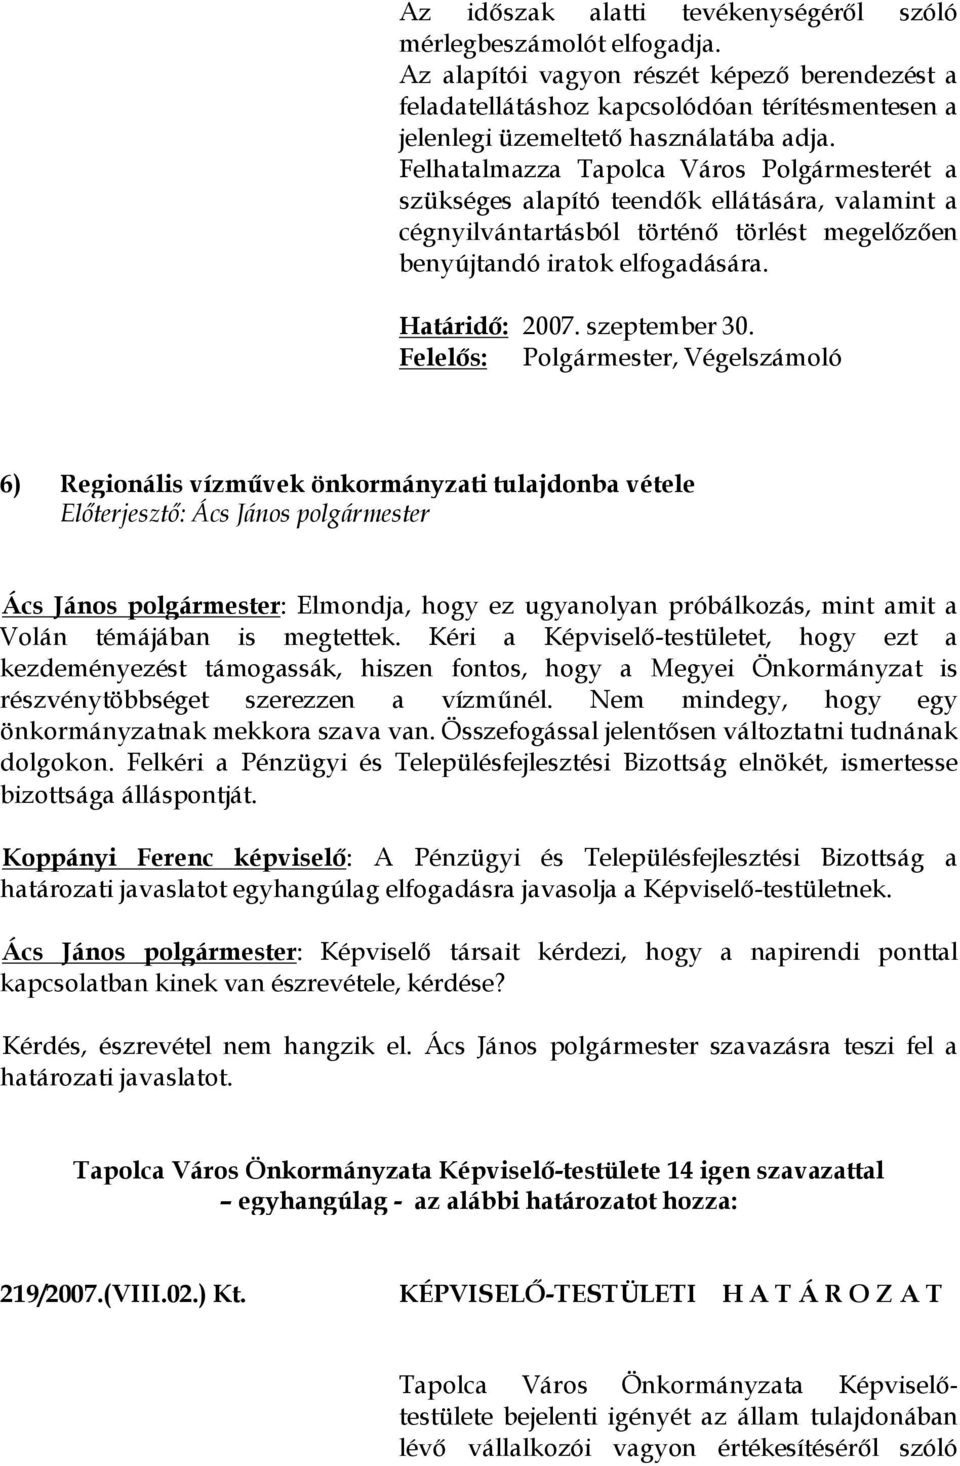 Felhatalmazza Tapolca Város Polgármesterét a szükséges alapító teendők ellátására, valamint a cégnyilvántartásból történő törlést megelőzően benyújtandó iratok elfogadására. Határidő: 2007.